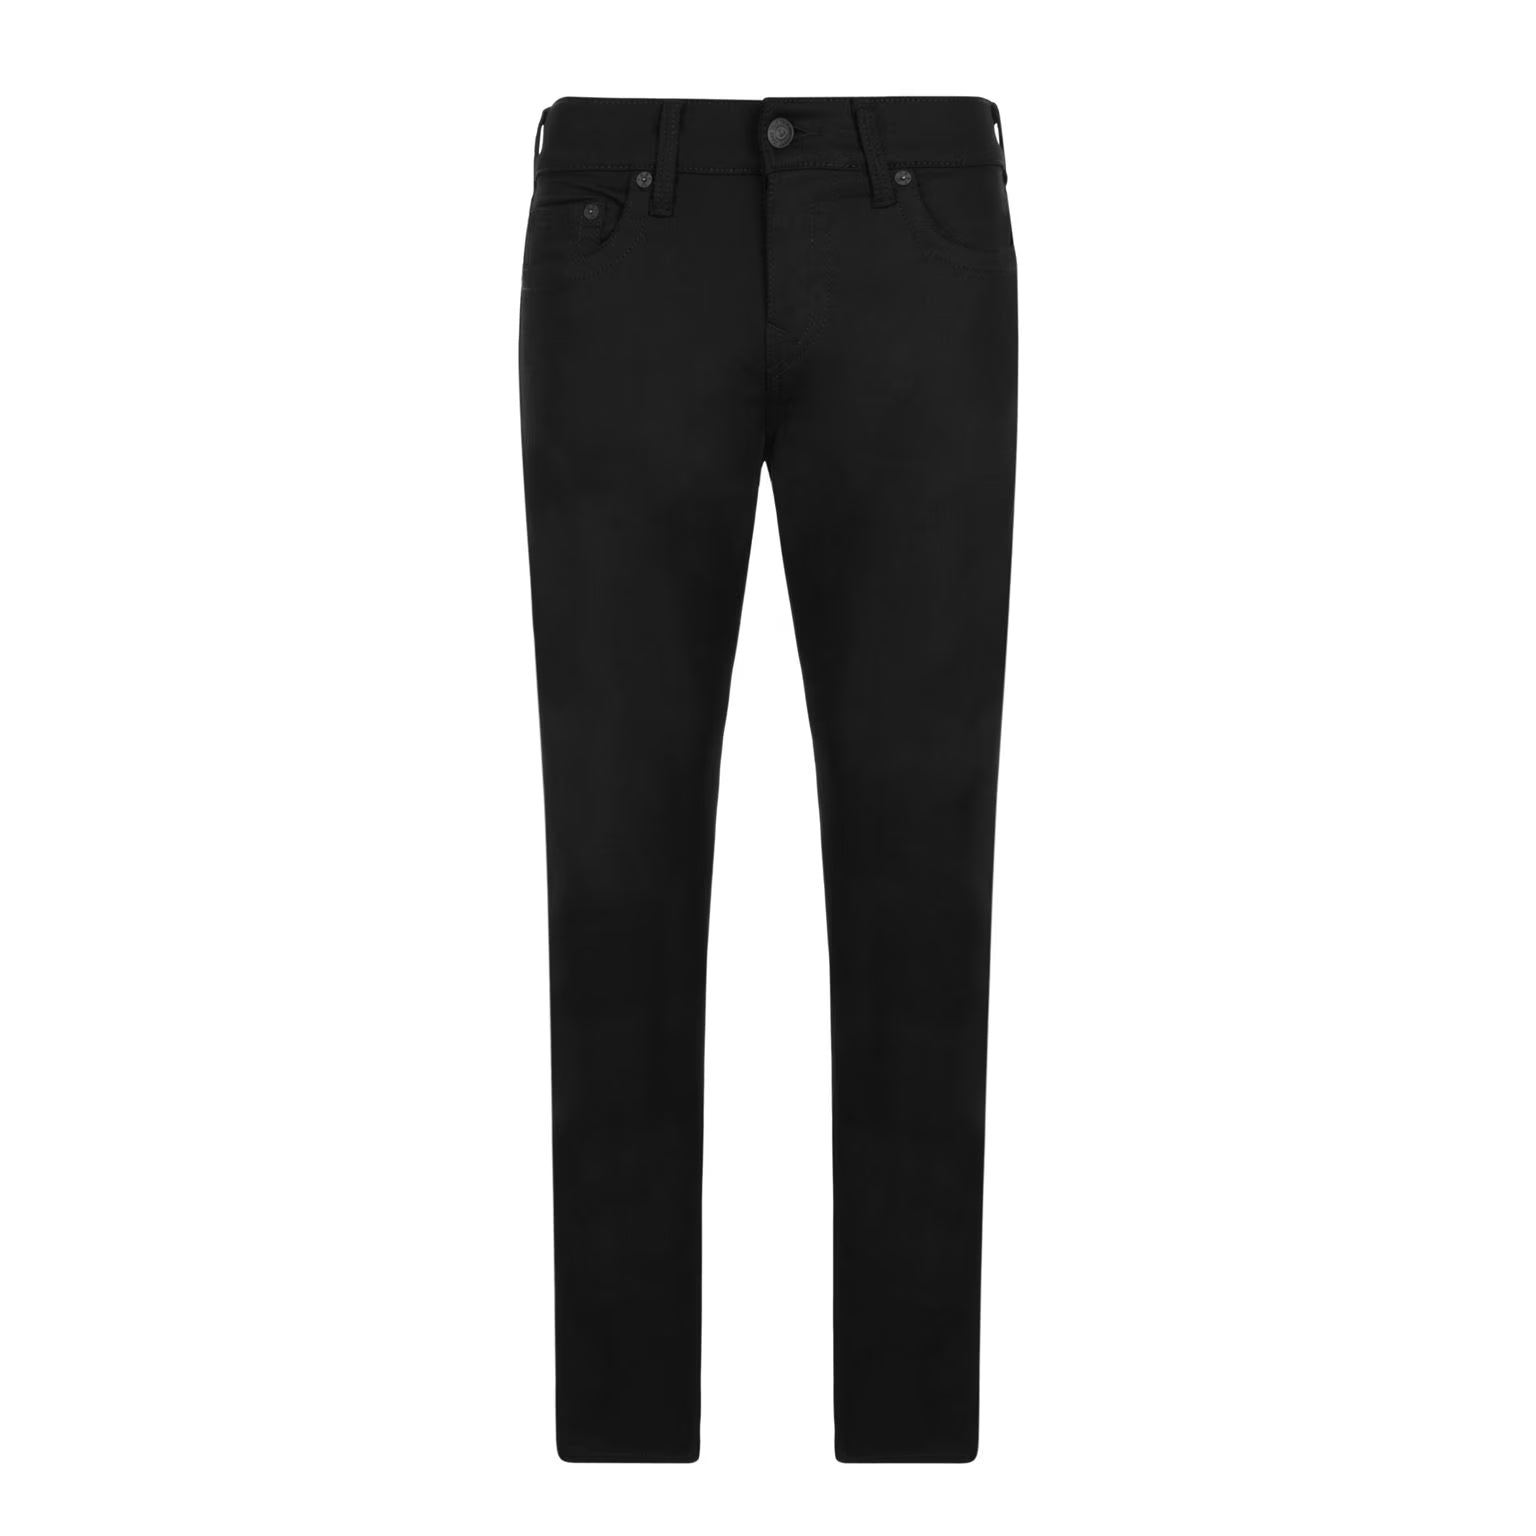 True Religion ROCCO NF Jeans - 2SB Black - Escape Menswear